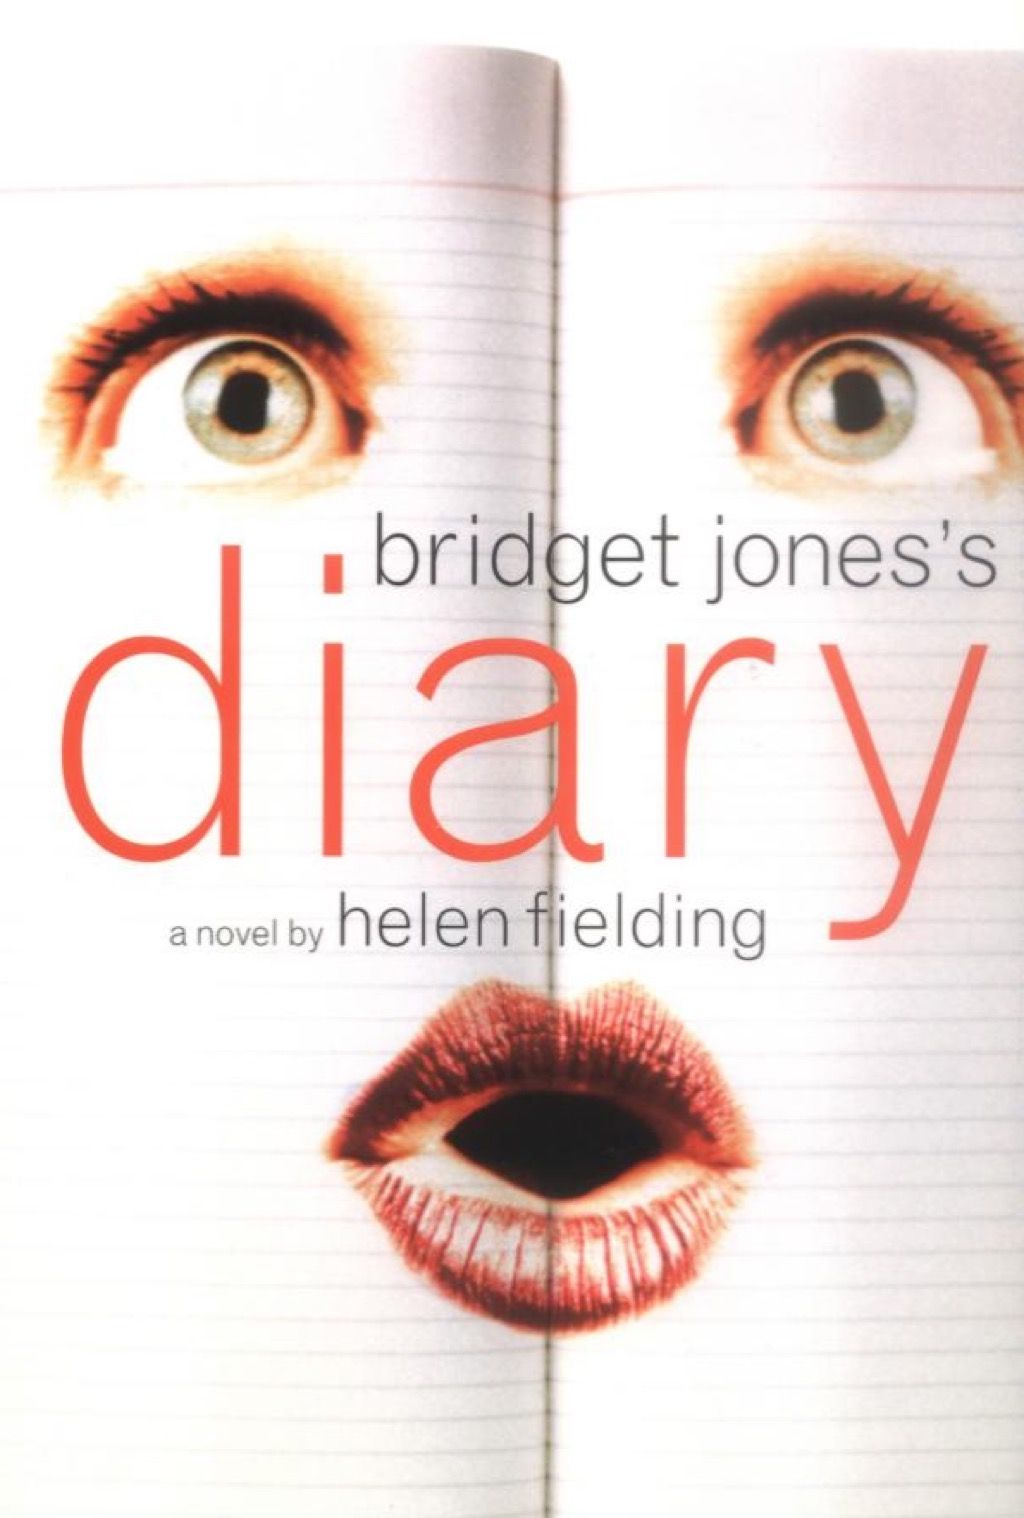 Bridget Jones naplója, olyan könyvek, amelyeket minden nőnek el kell olvasnia a 40-es éveiben